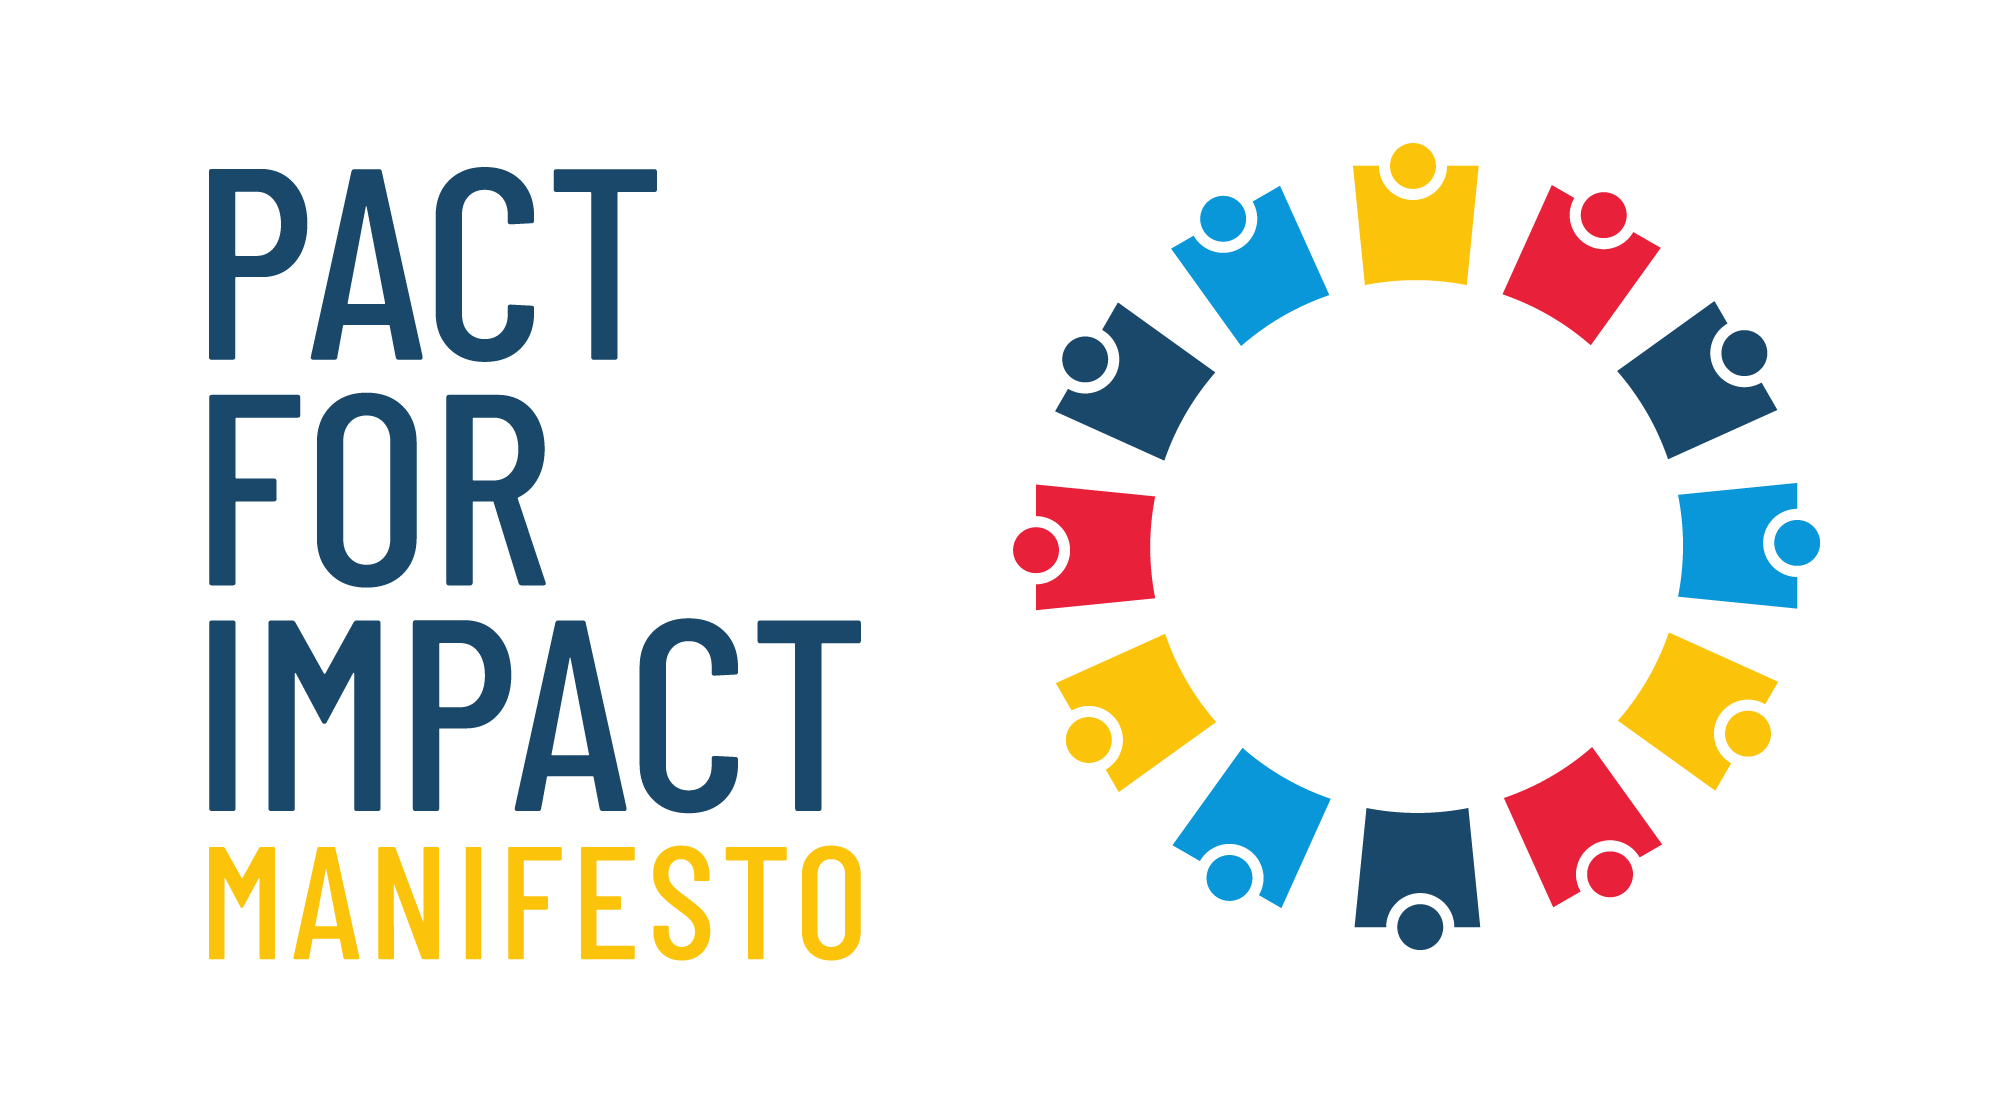 El Manifiesto de Pact for Impact!